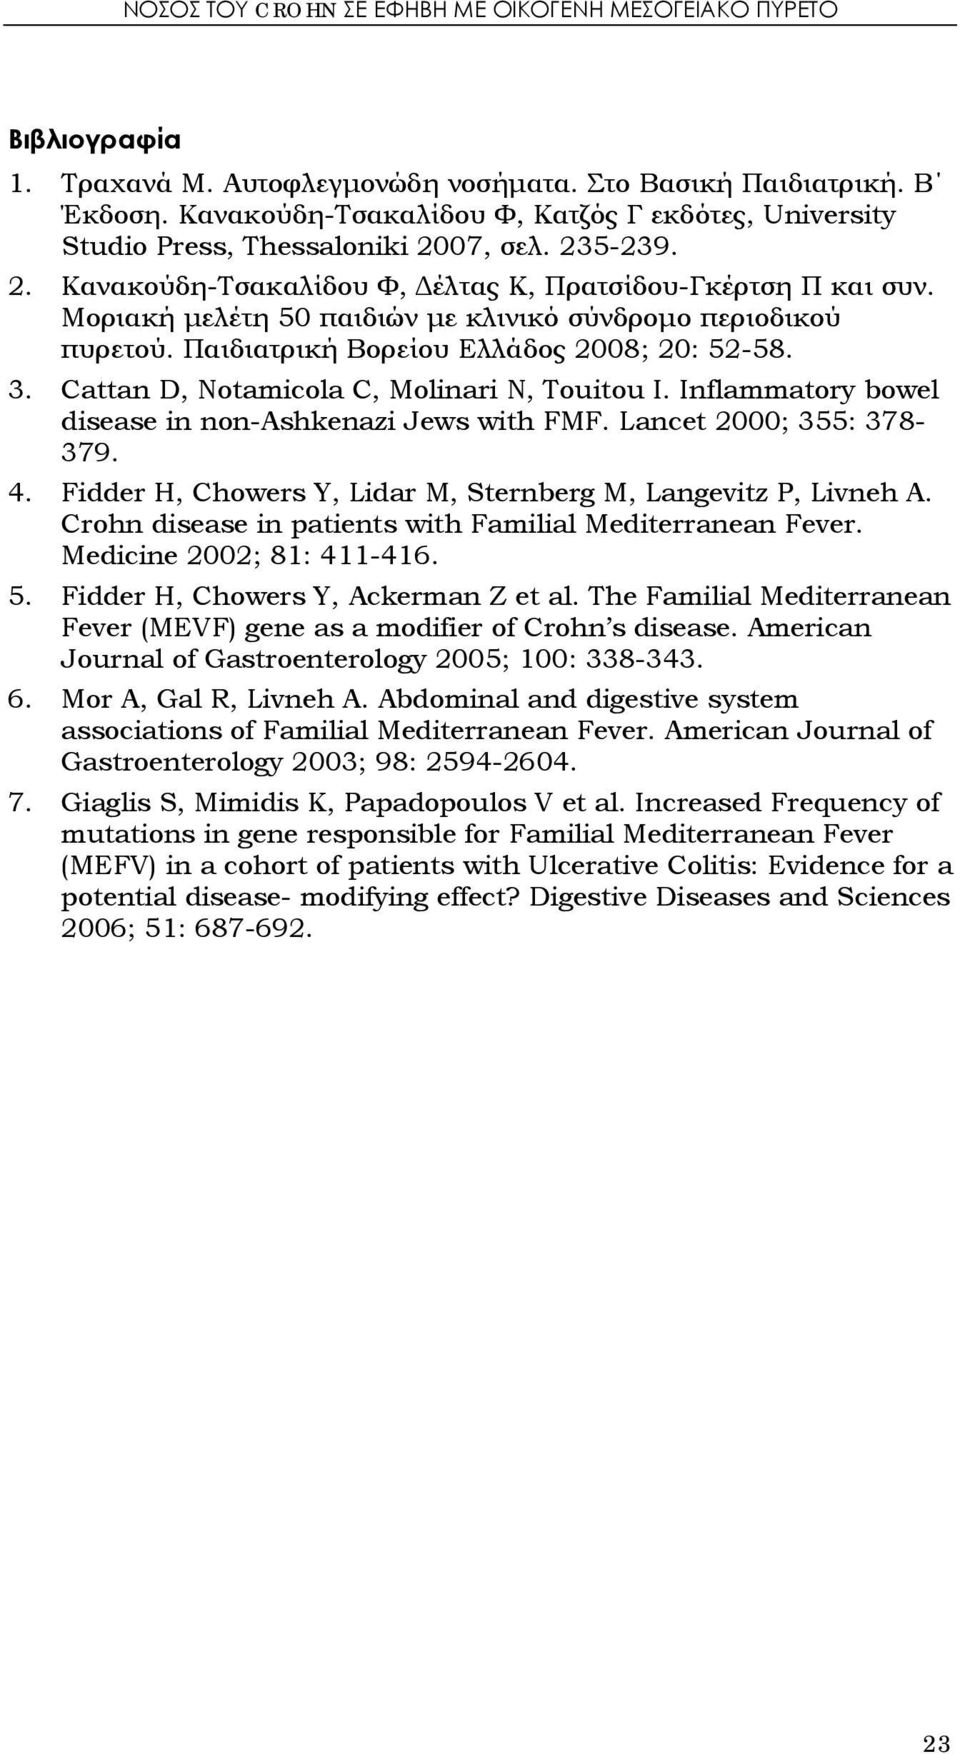 Μοριακή μελέτη 50 παιδιών με κλινικό σύνδρομο περιοδικού πυρετού. Παιδιατρική Βορείου Ελλάδος 2008; 20: 52-58. 3. Cattan D, Notamicola C, Molinari N, Touitou I.